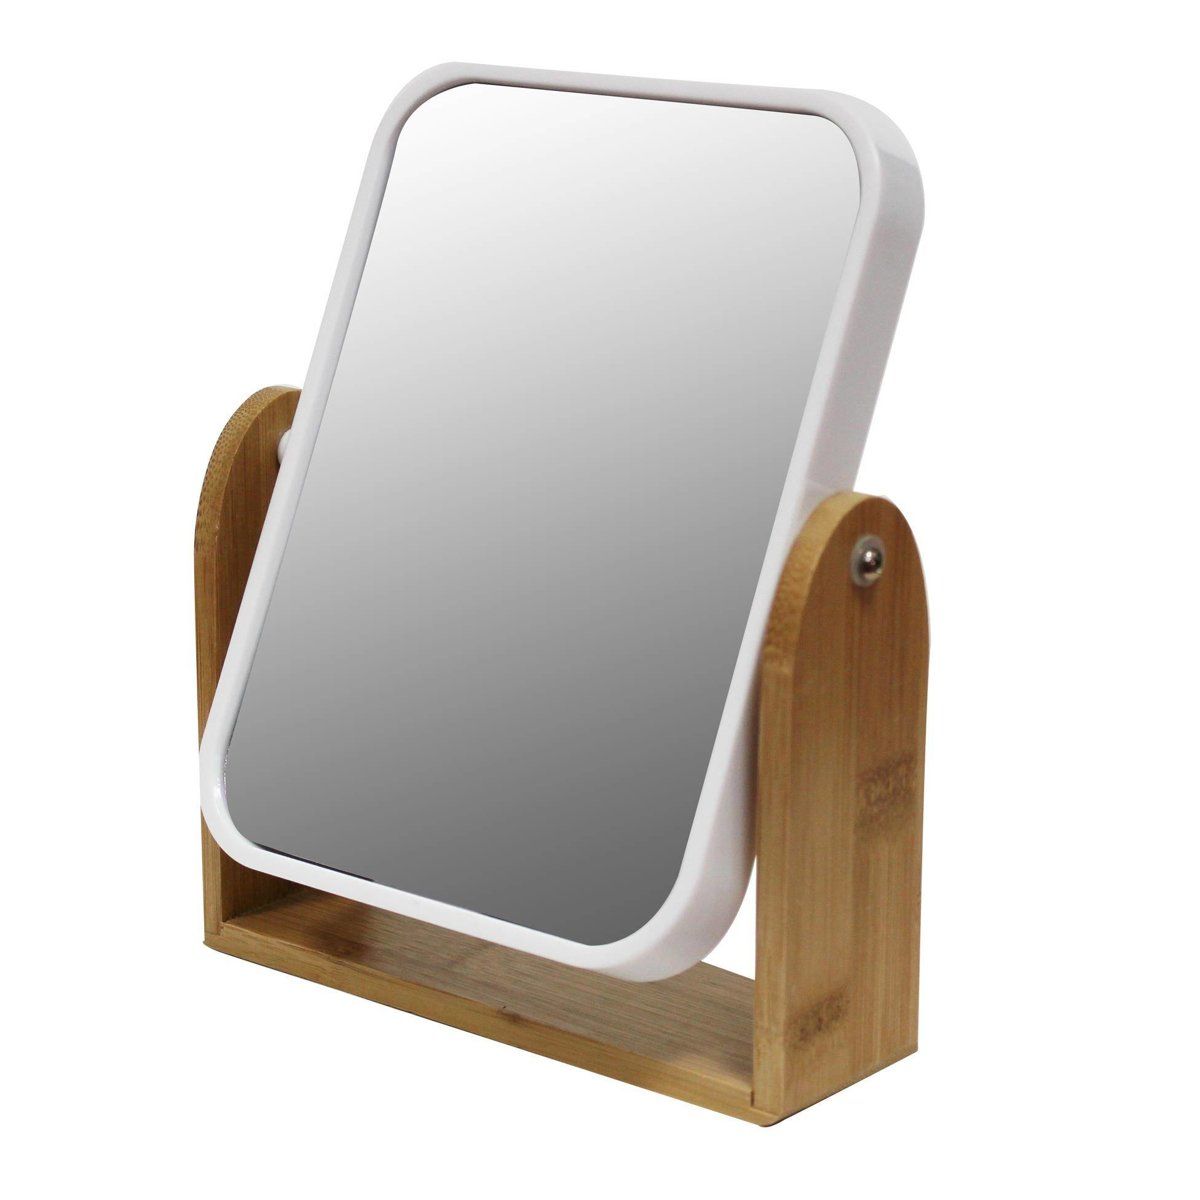 neznámá značka Oboustranné kosmetické zrcadlo SMART, 16 x 20 cm - EMAKO.CZ s.r.o.